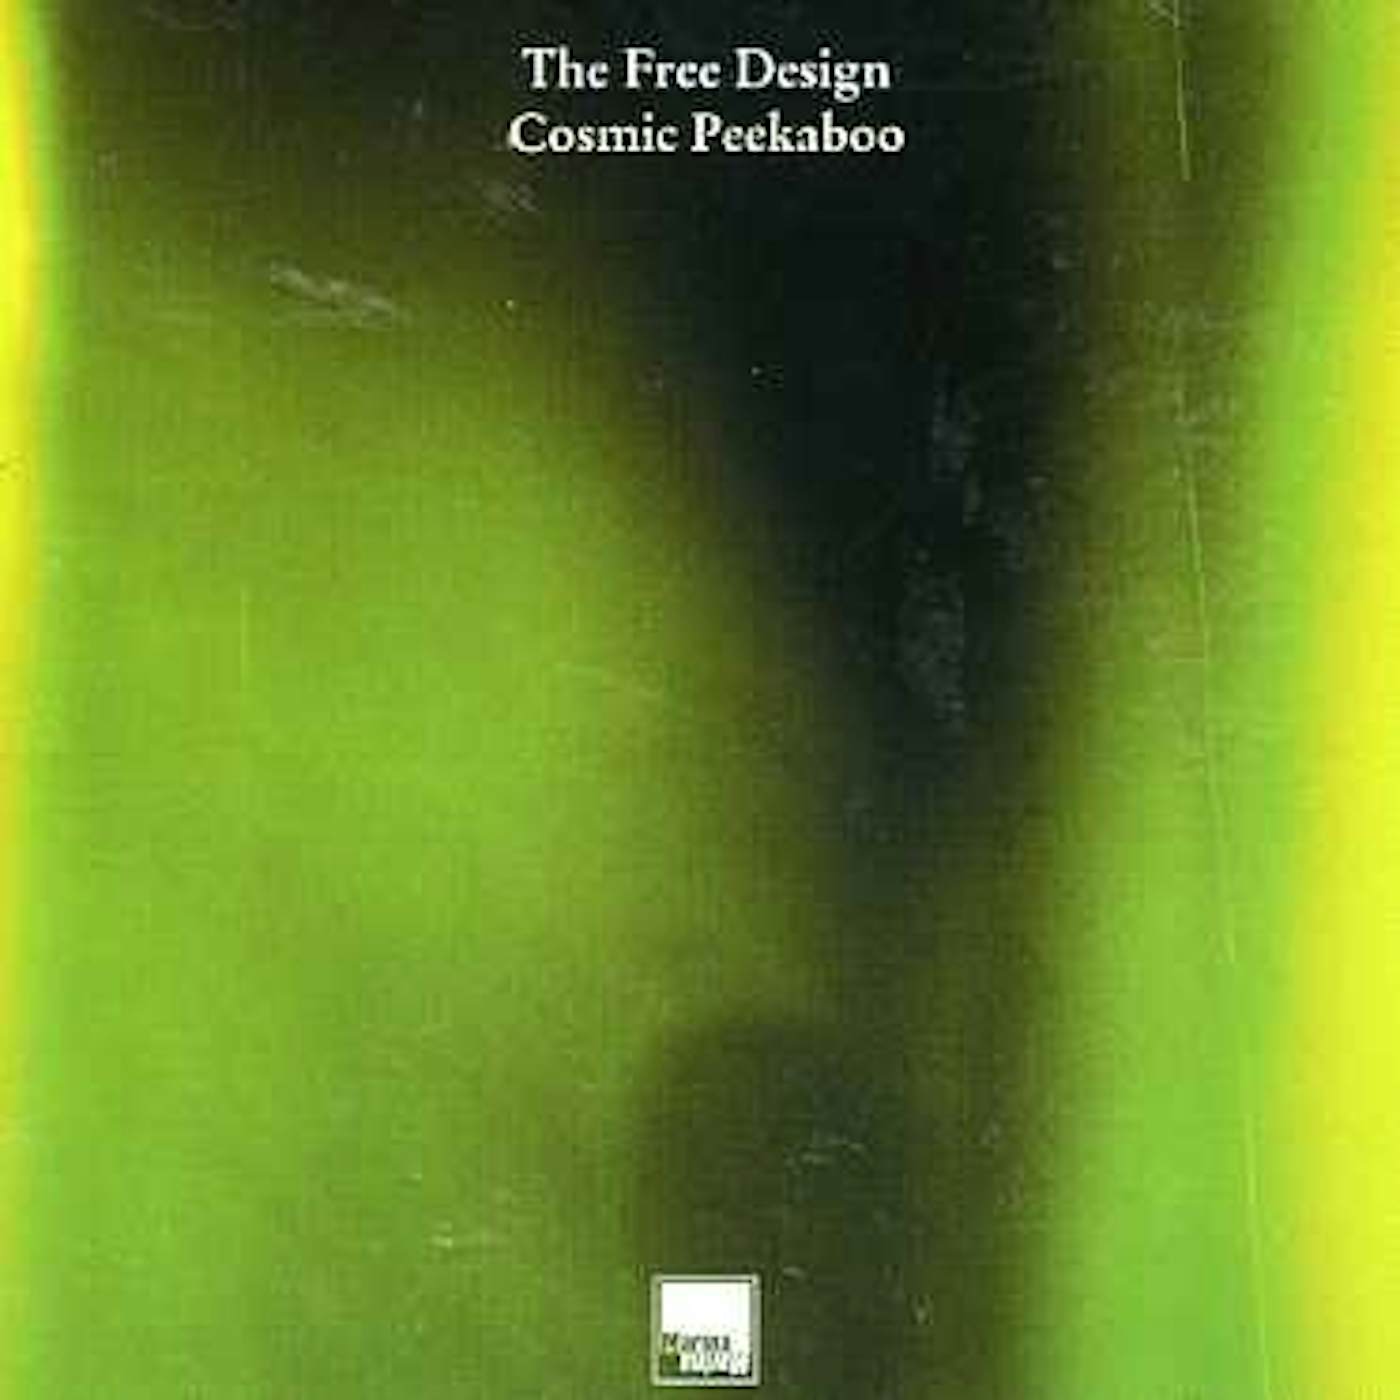 The Free Design COSMIC PEEKABOO CD